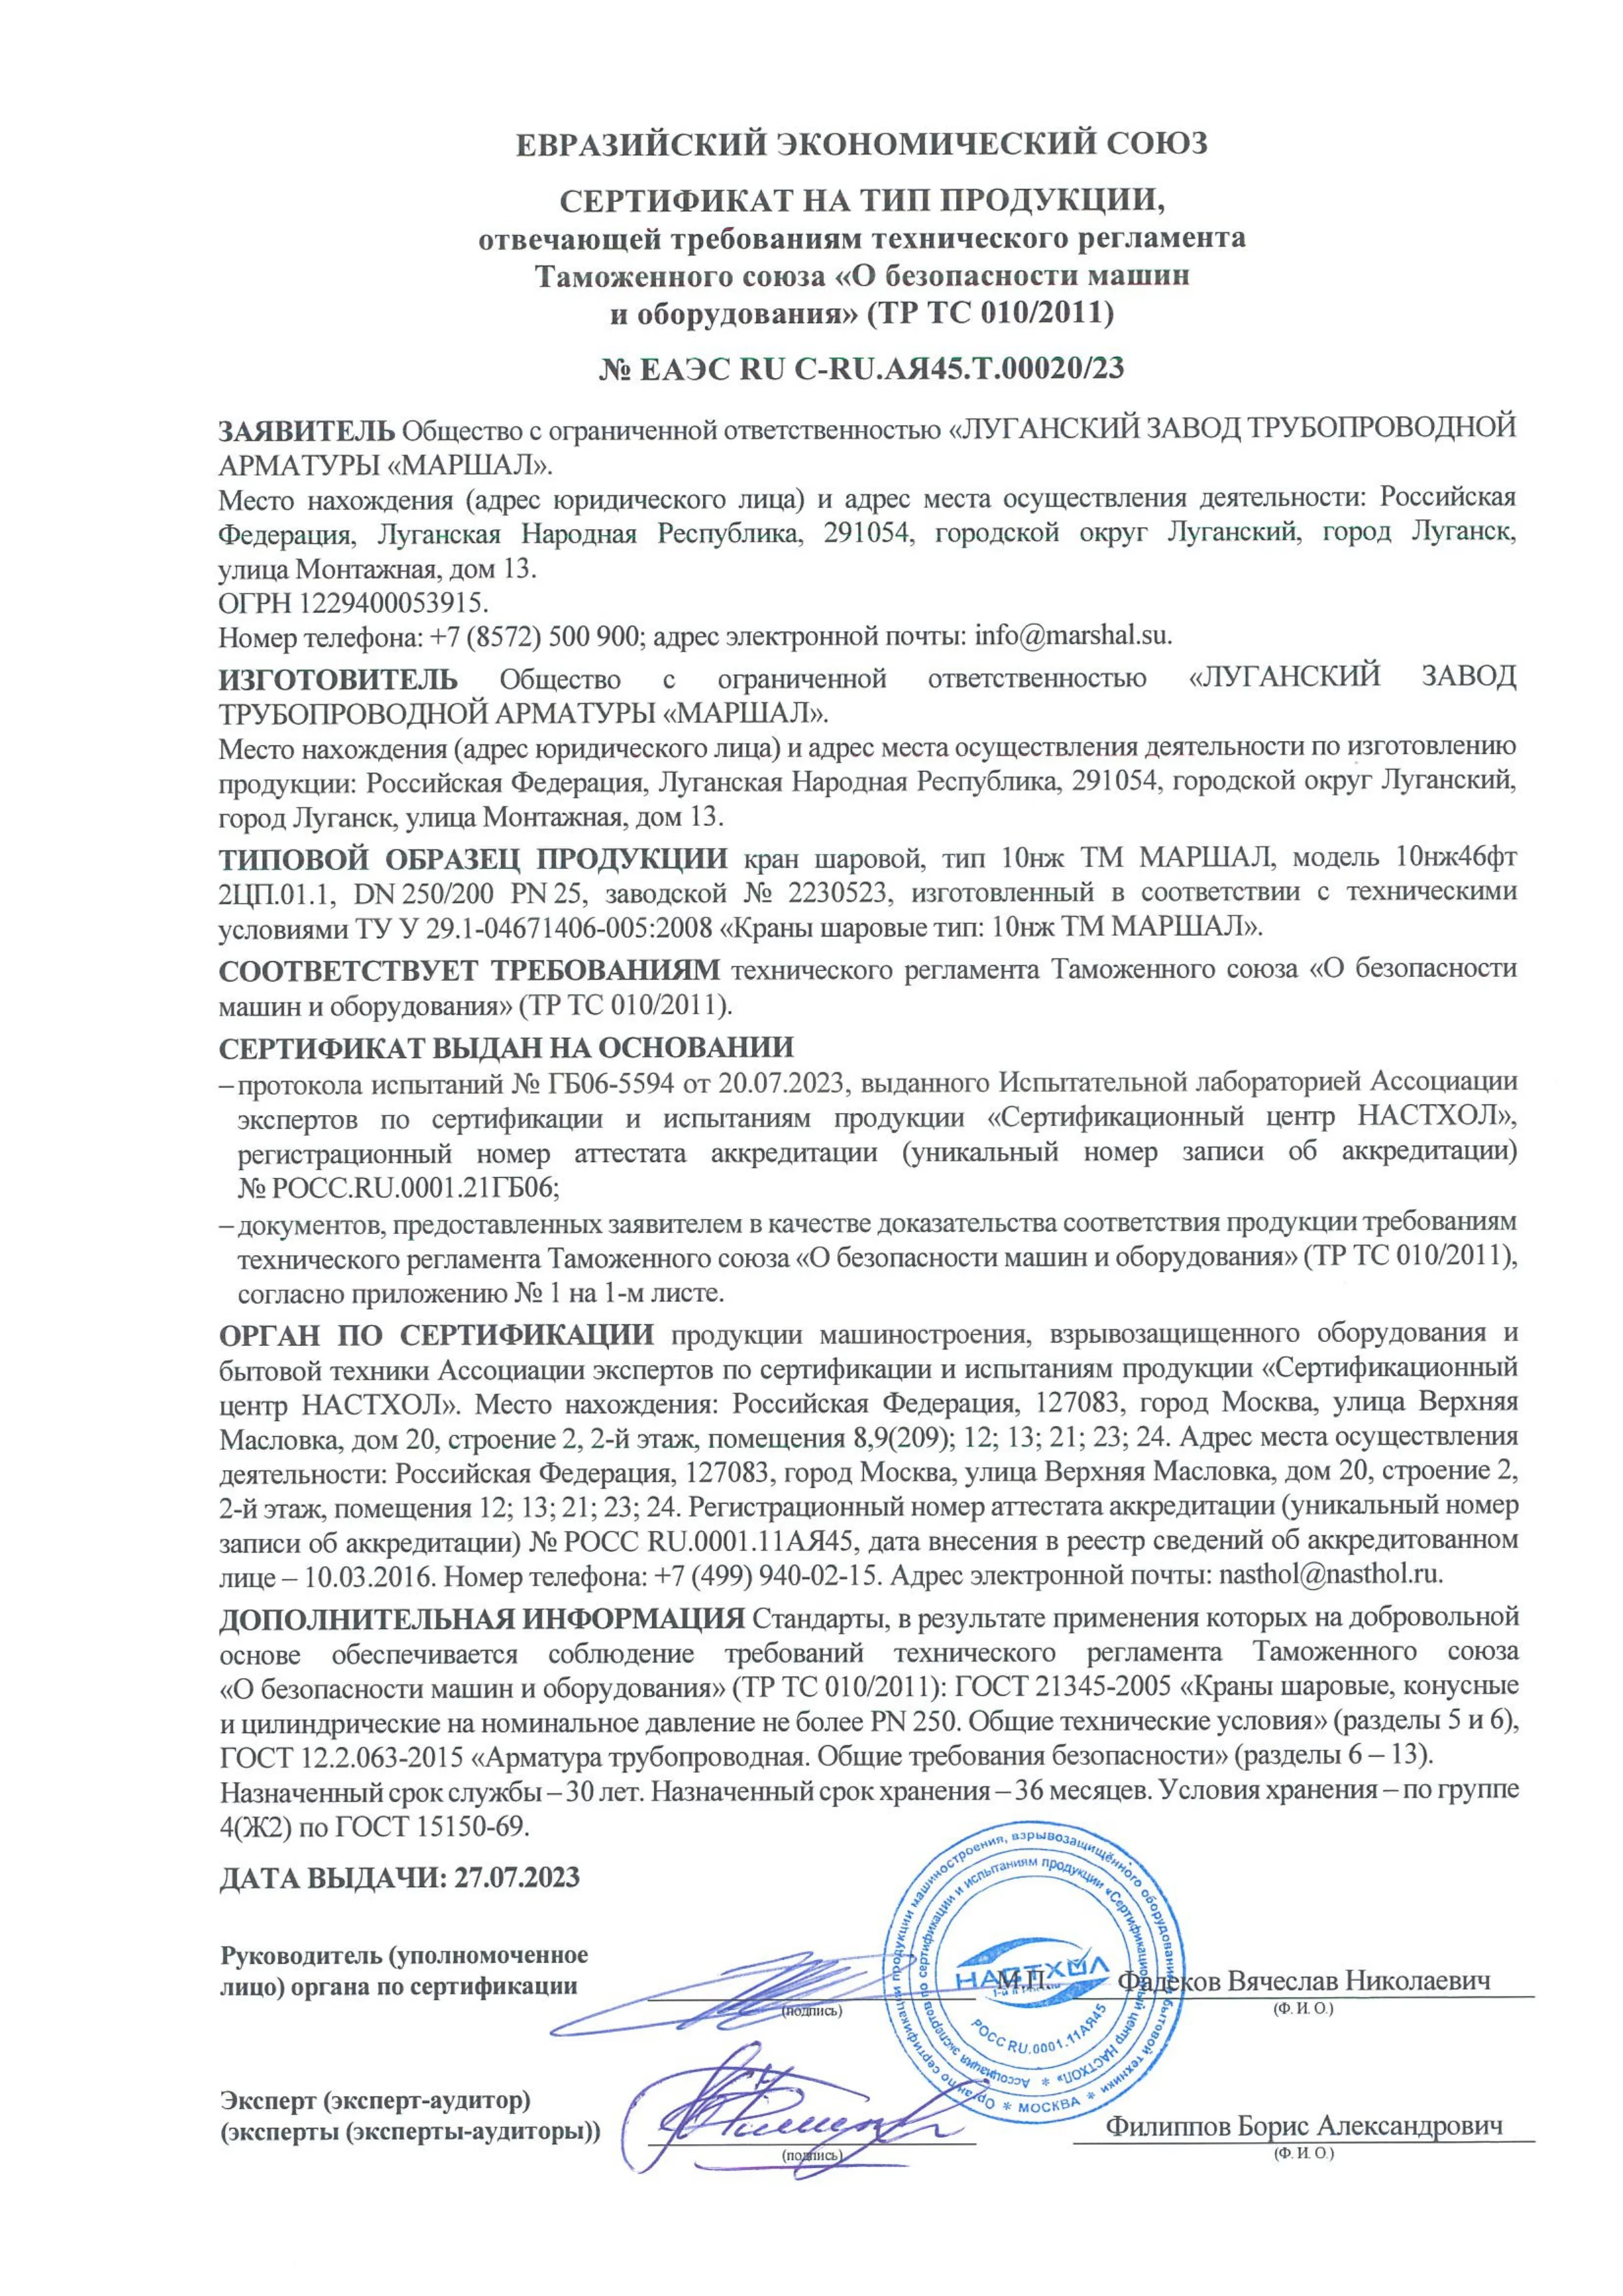 Сертификат соответствии  требованиям ТР ТС 010/2011 на краны шаровые тип 10нж